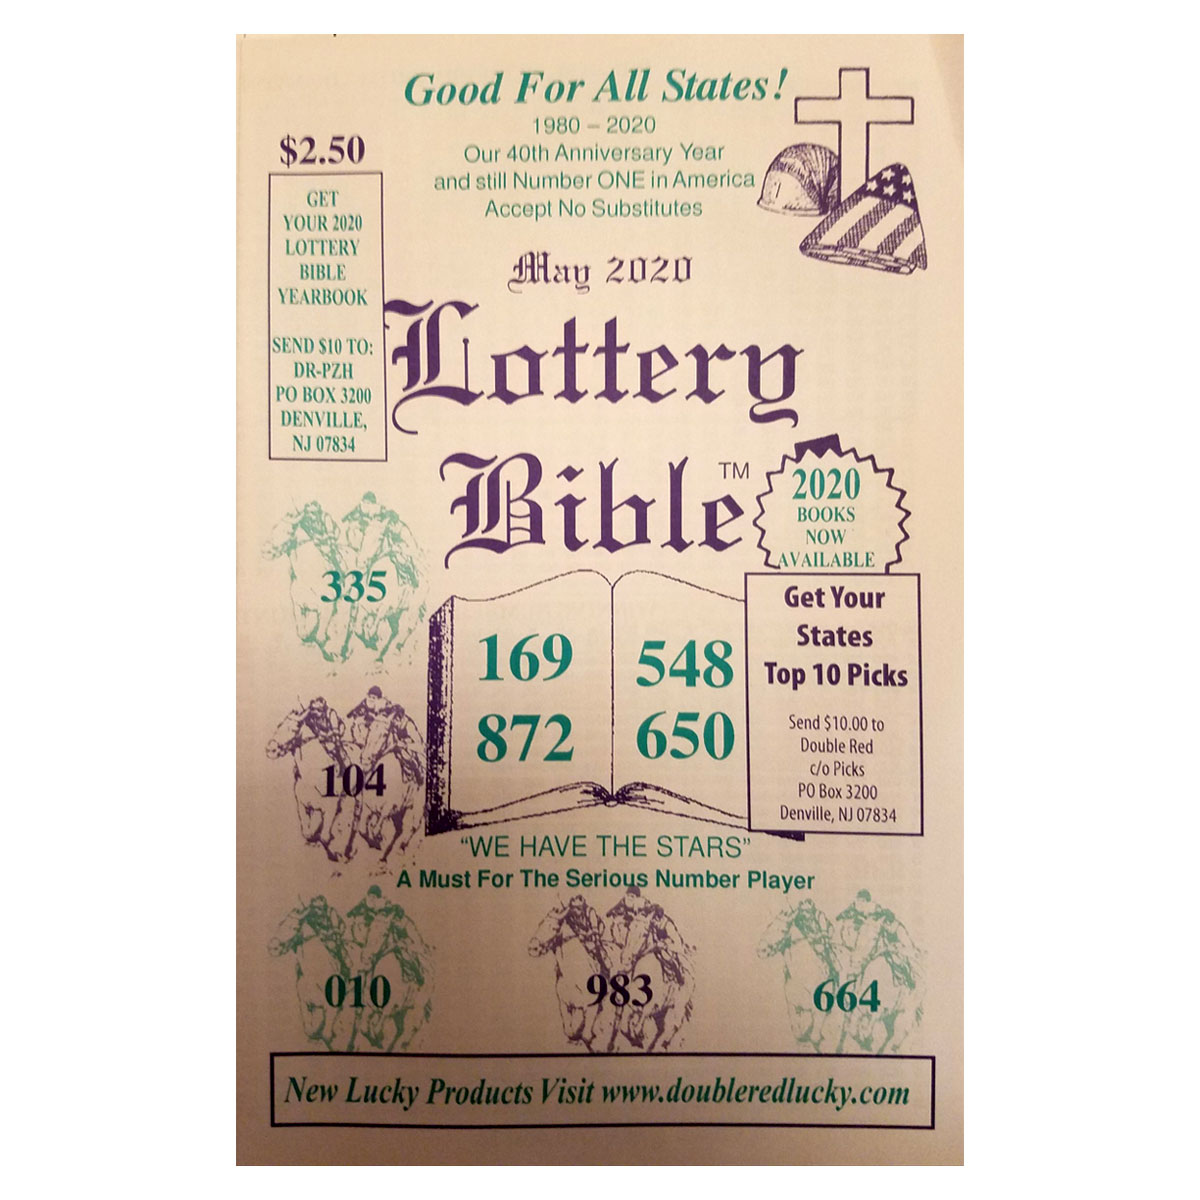 Lottery Bible